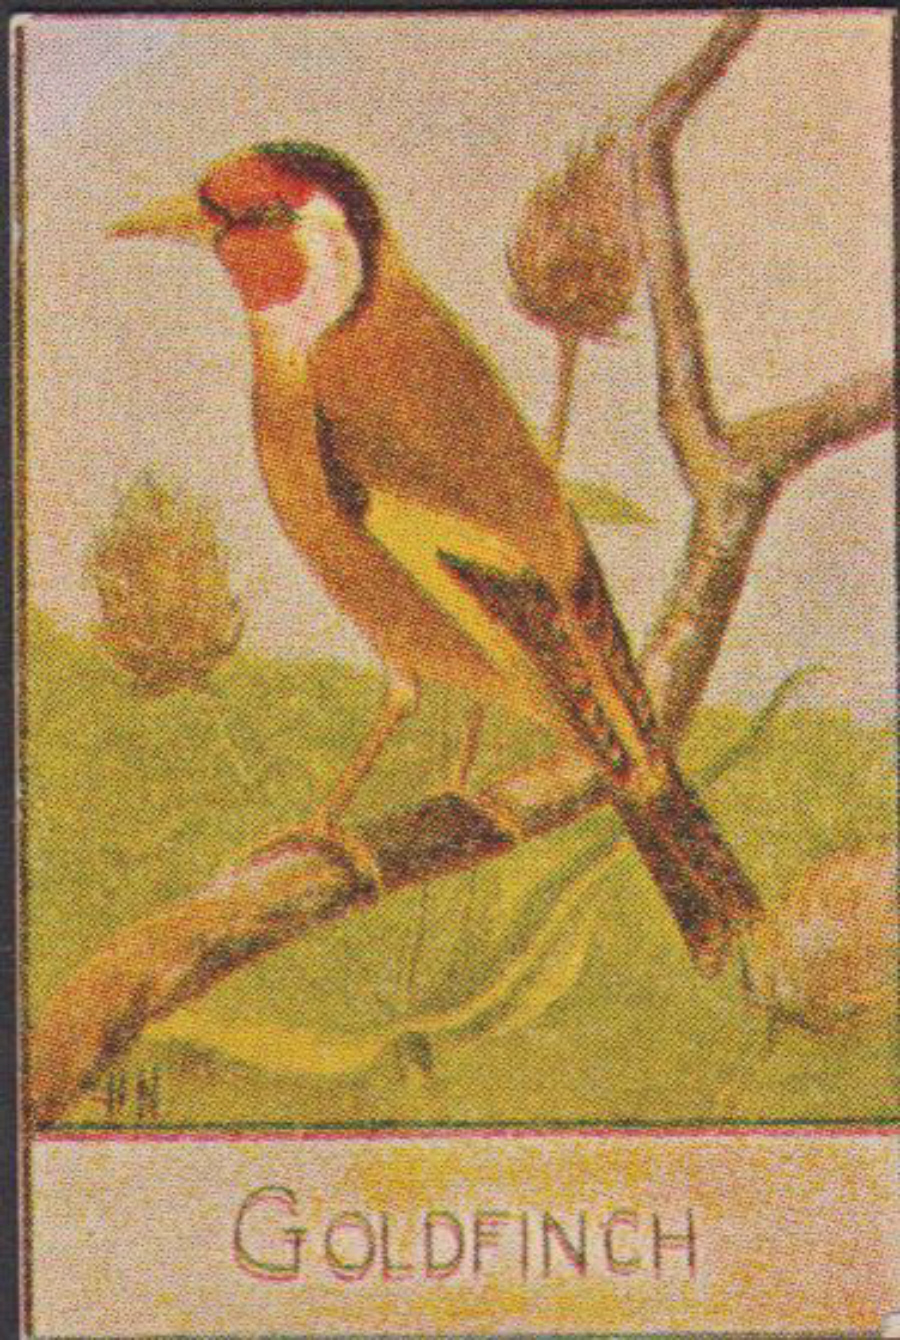 Spratt's British Bird Series Numbered No 63 Goldfinch